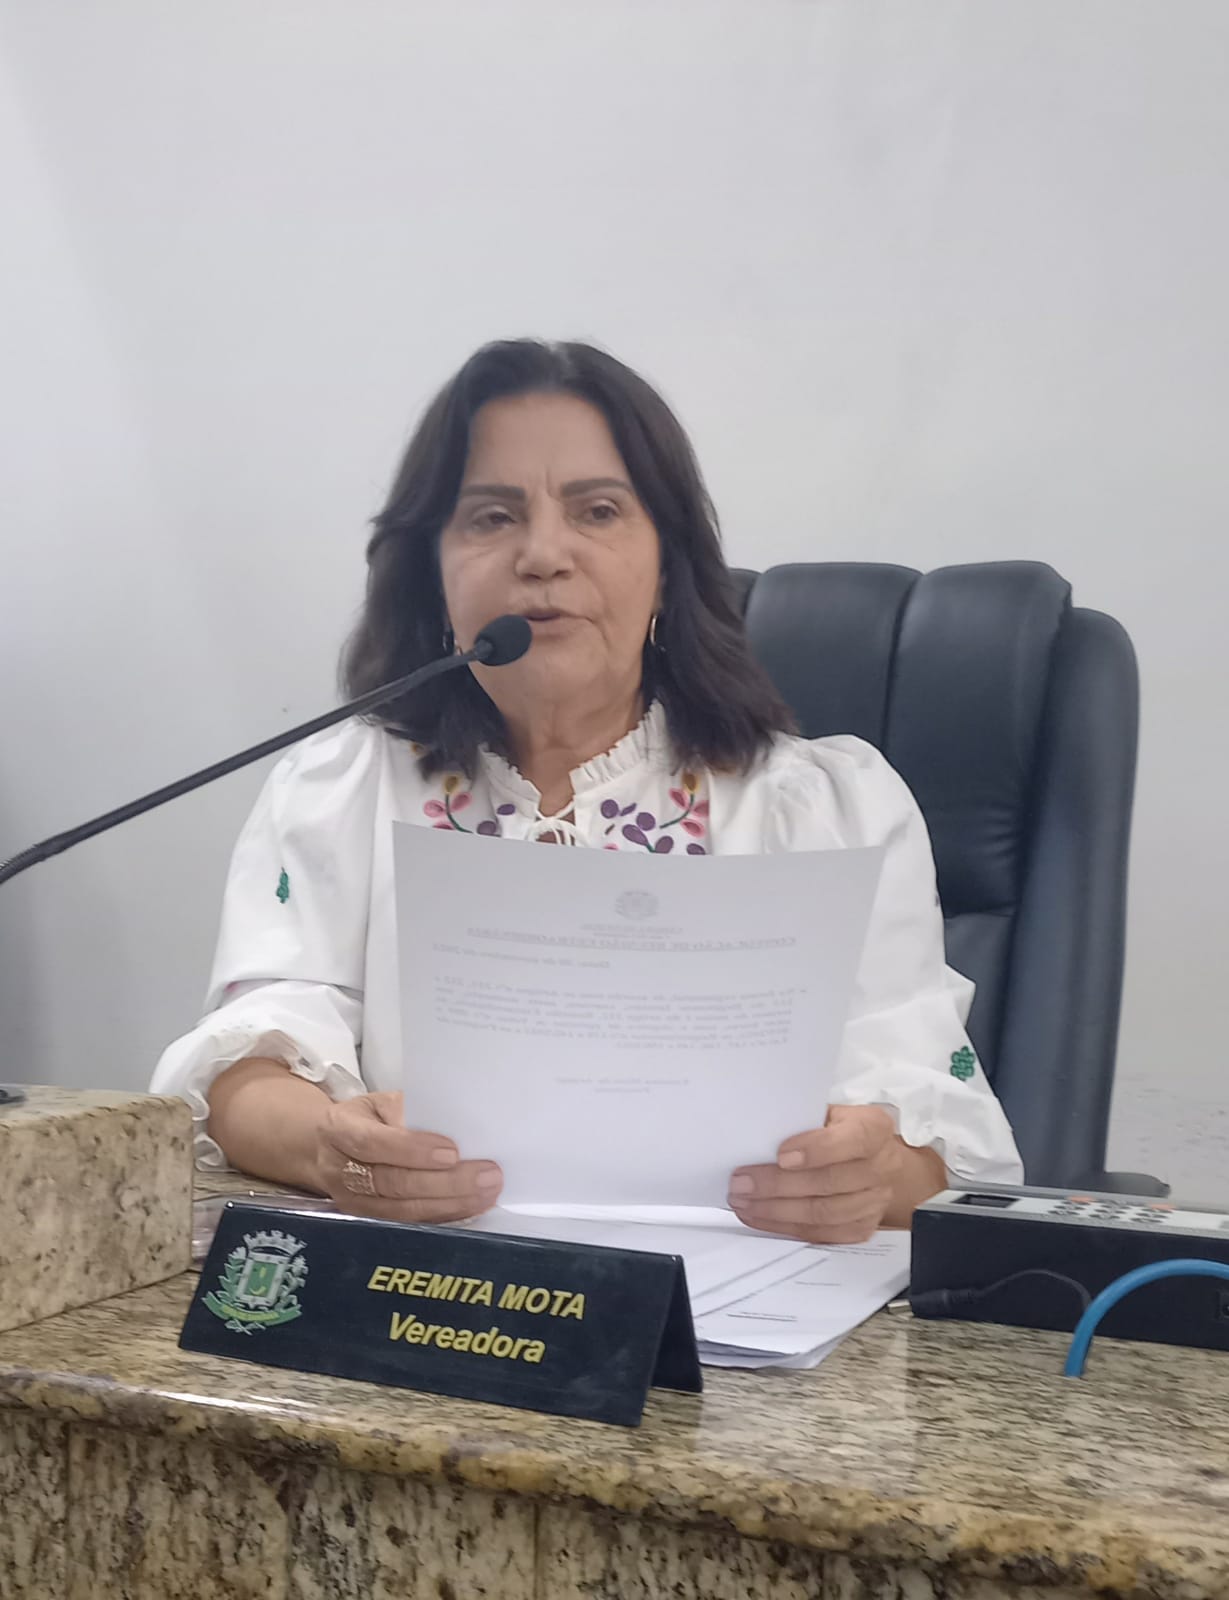 Com Diário Oficial fora do ar, Câmara fica impedida de publicar atos oficias; alerta presidente Eremita Mota